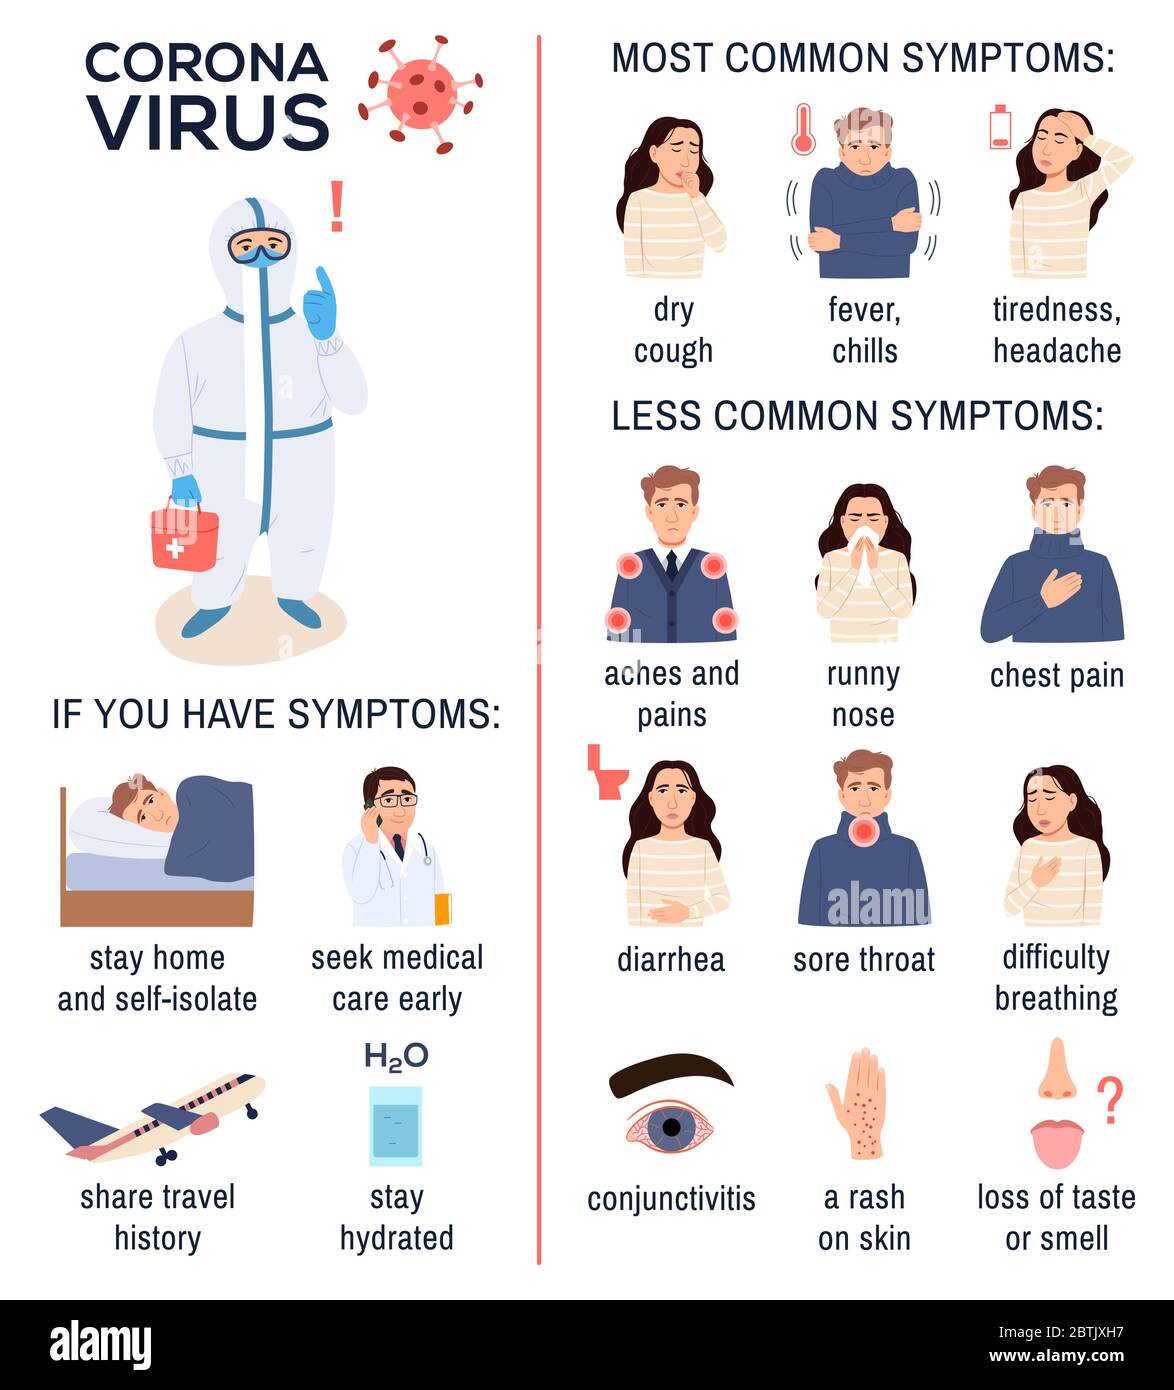 Coronavirus-Krankheit Covid-19 Symptome Tipps Poster mit Arzt in Schutzkleidung, Maske, infizierte Person auf weißem Hintergrund. Corona-Virus 2019-NCO Stock Vektor